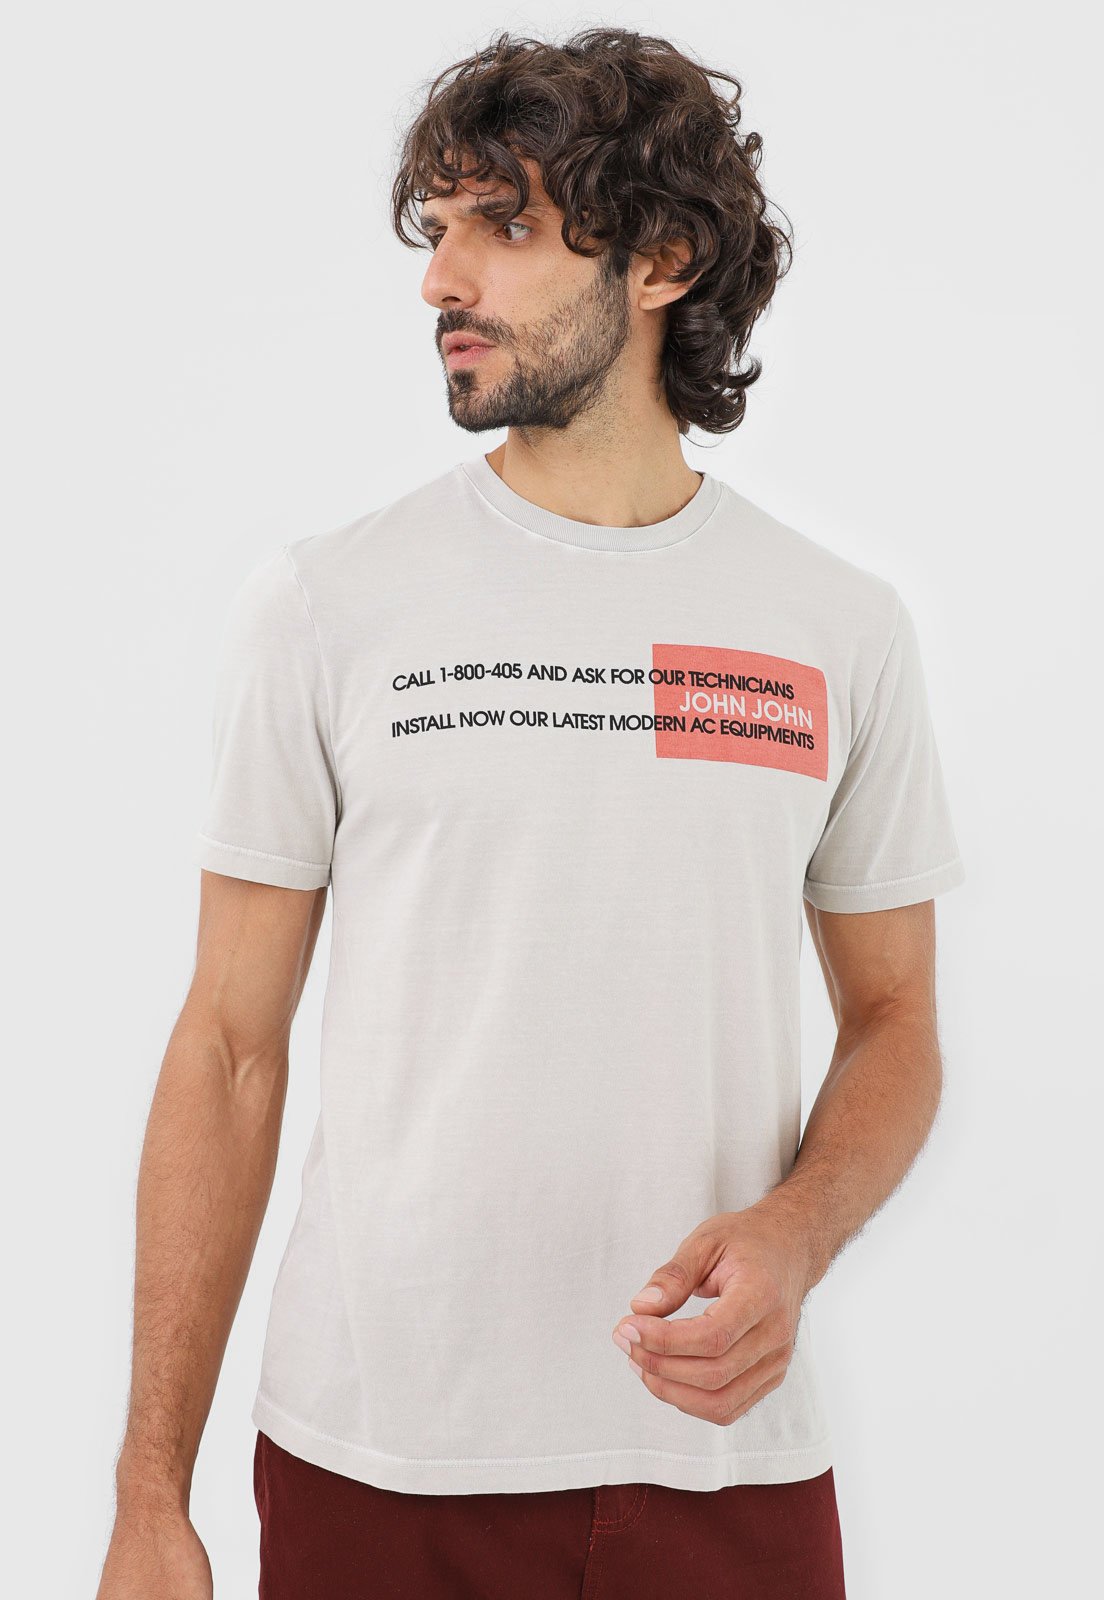 Camiseta John John Casual Cinza - Compre Agora